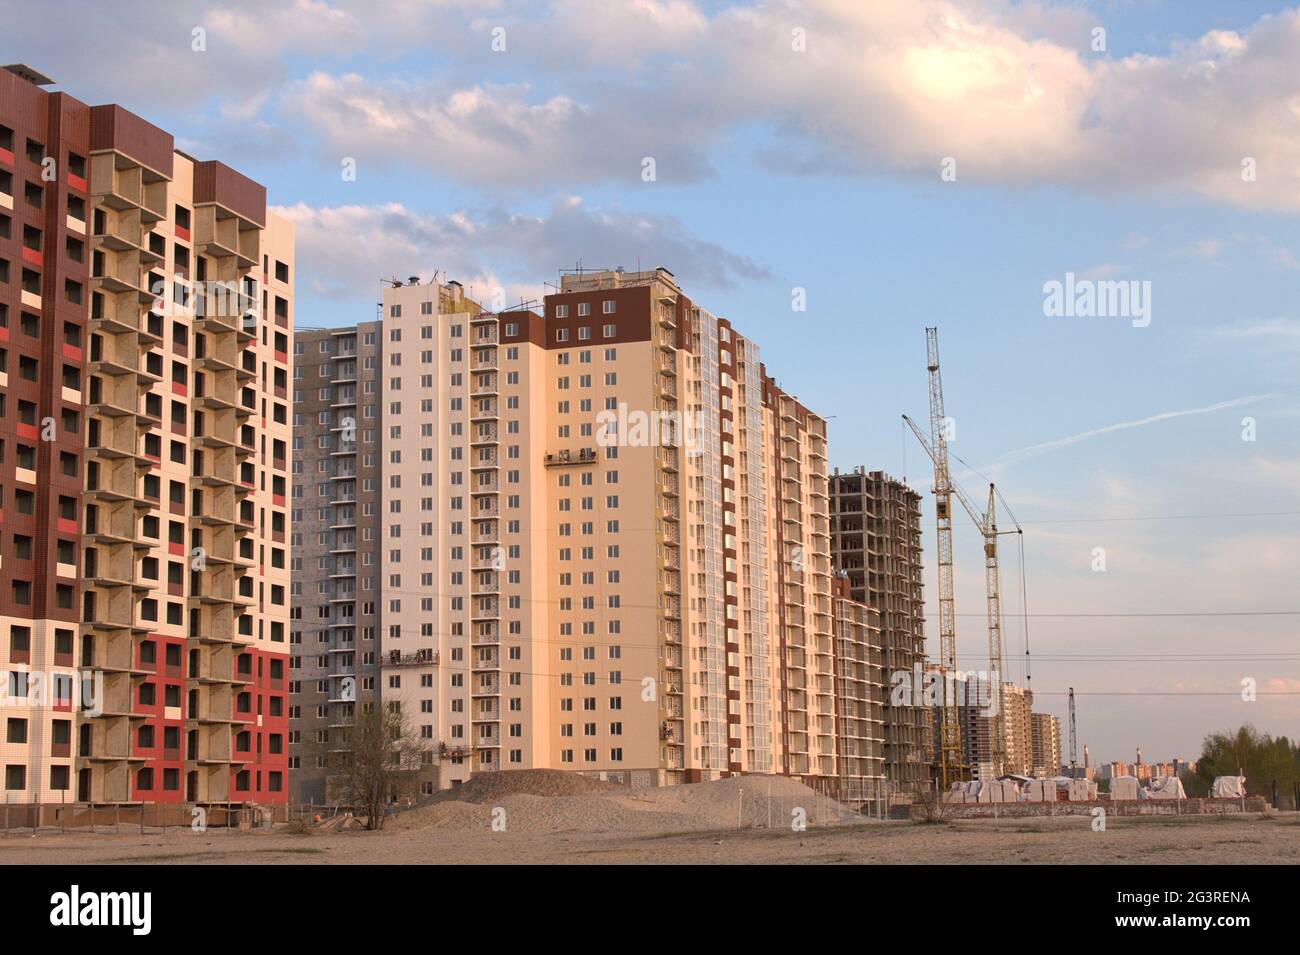 Se están construyendo edificios de apartamentos de varios pisos de ladrillos rojos, blancos y marrones con aberturas en las ventanas. Foto de stock